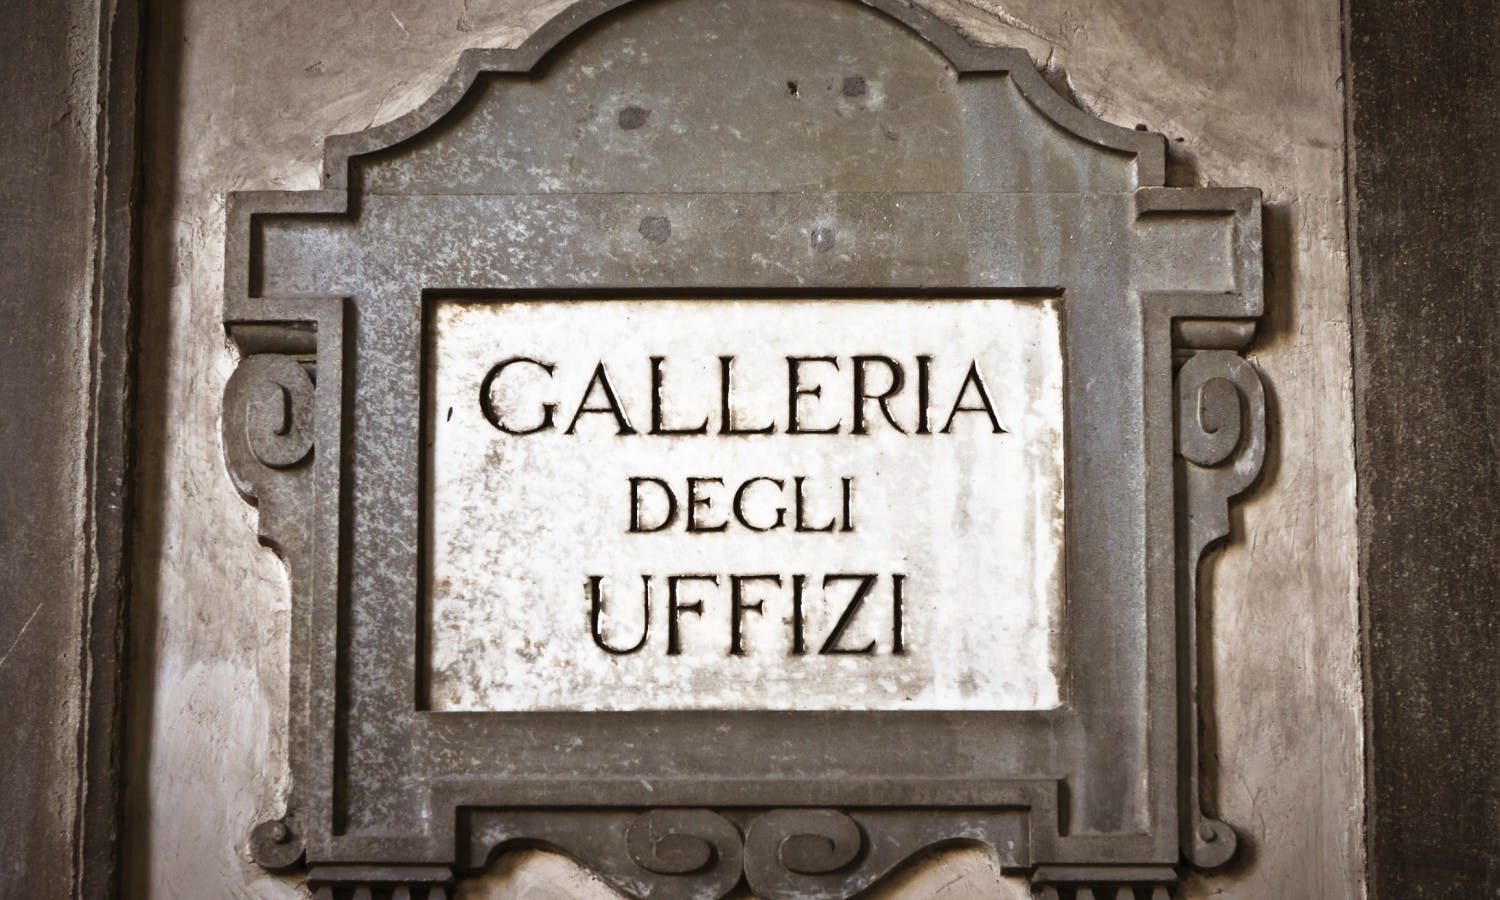 Passeio a pé da Florença com bilhetes e visita guiada para a Galeria Uffizi